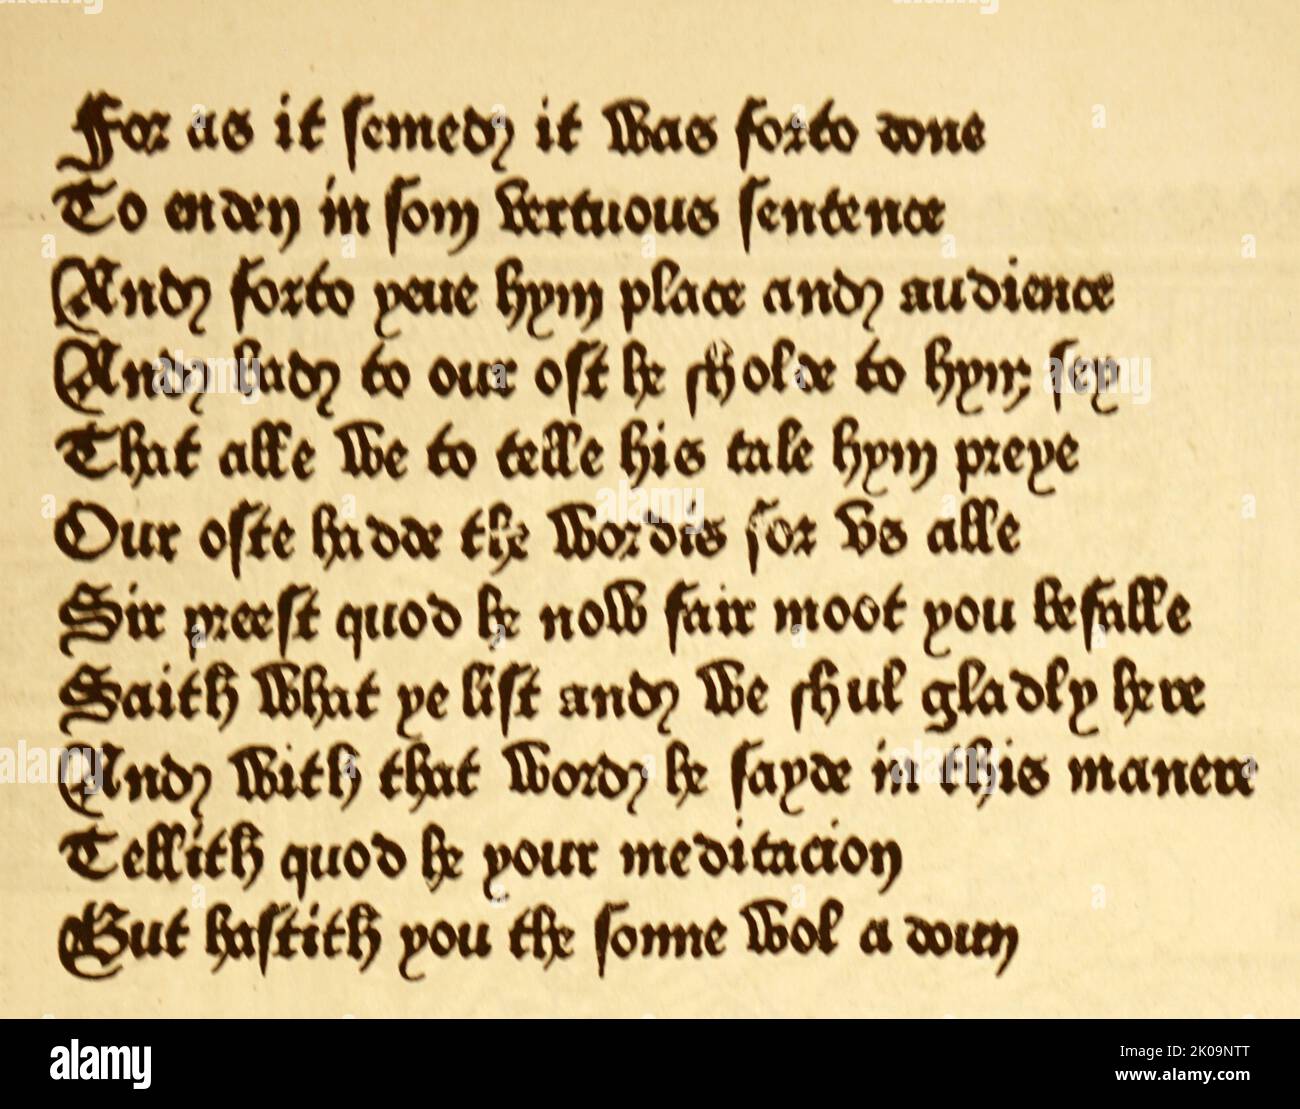 Die Canterbury Tales. Illustration und Text, gedruckt von William Caxton im Jahre 1476. William Caxton (c. 1422 - c. 1491) war ein englischer Kaufmann, Diplomat und Schriftsteller. Er gilt als der erste, der 1476 eine Druckmaschine in England eingeführt hat, und war als Drucker der erste englische Einzelhändler für gedruckte Bücher. Stockfoto